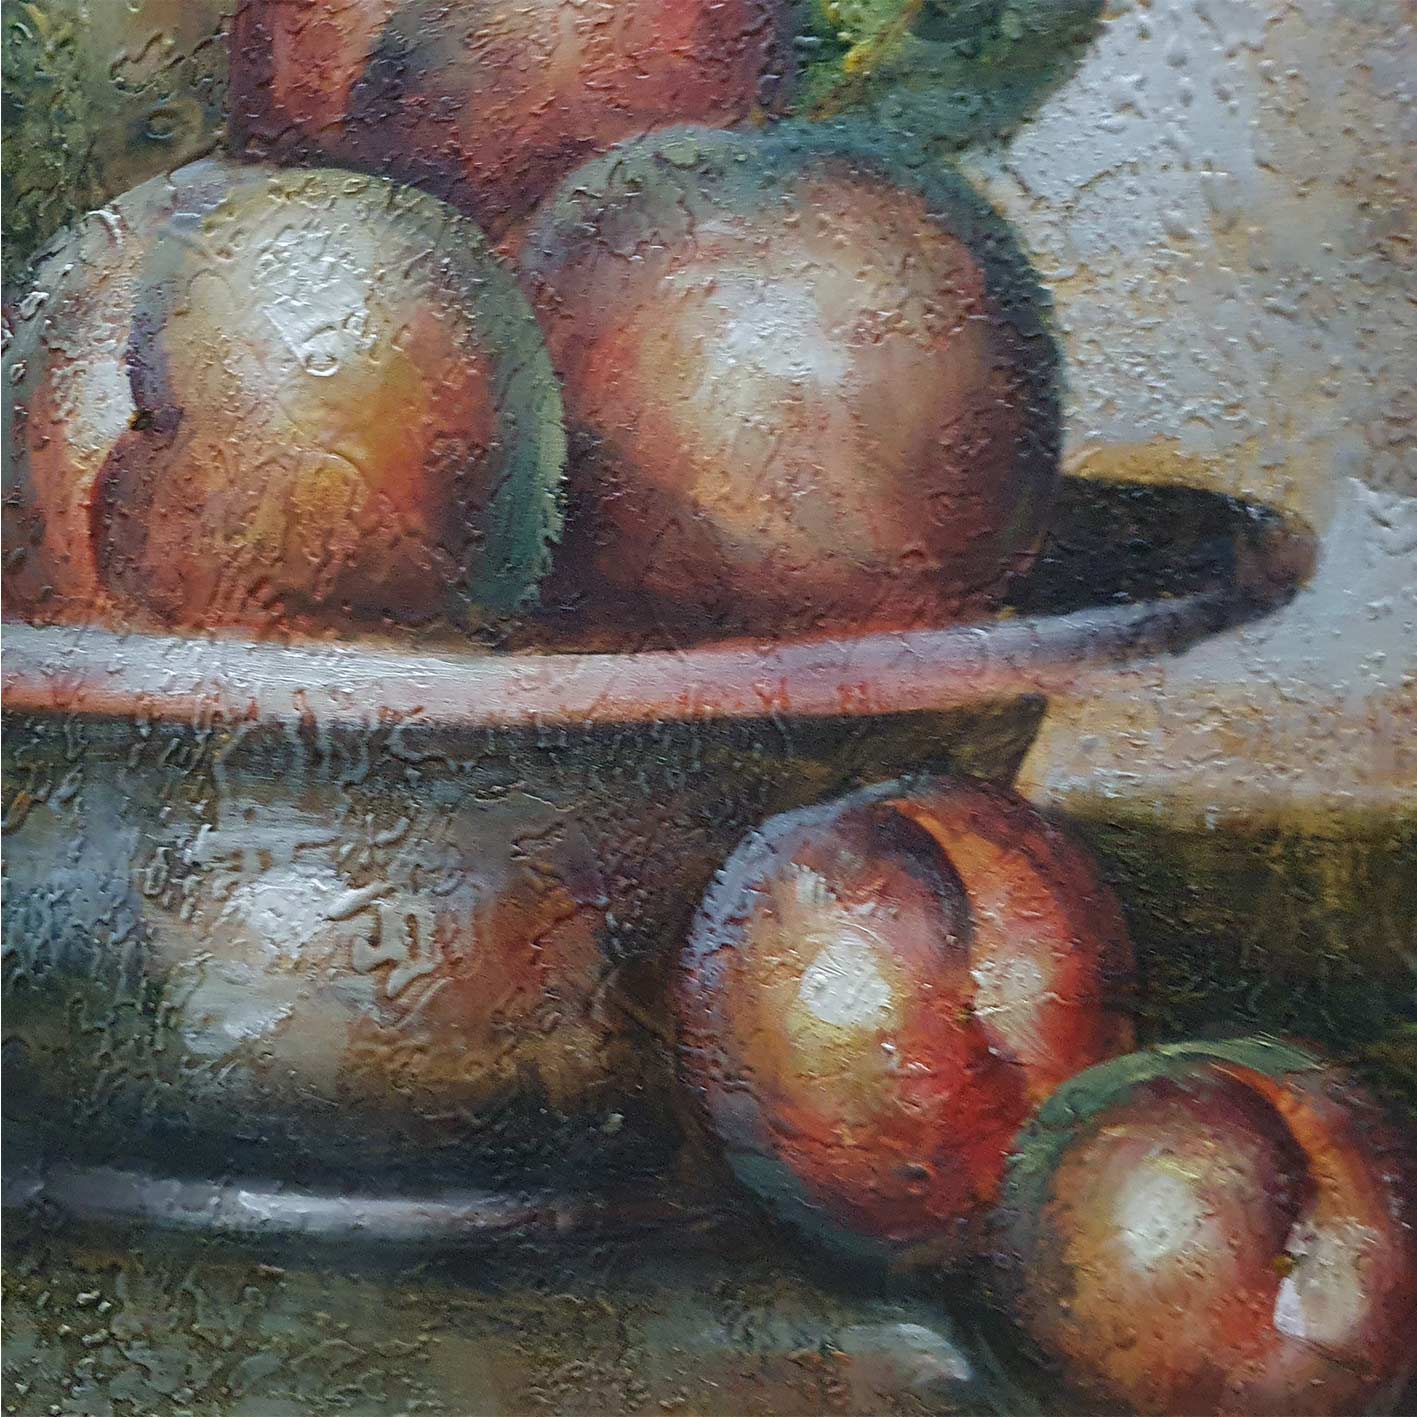 Fruchtstillleben Diptychon Gemälde 60x50 cm [2 Stück]